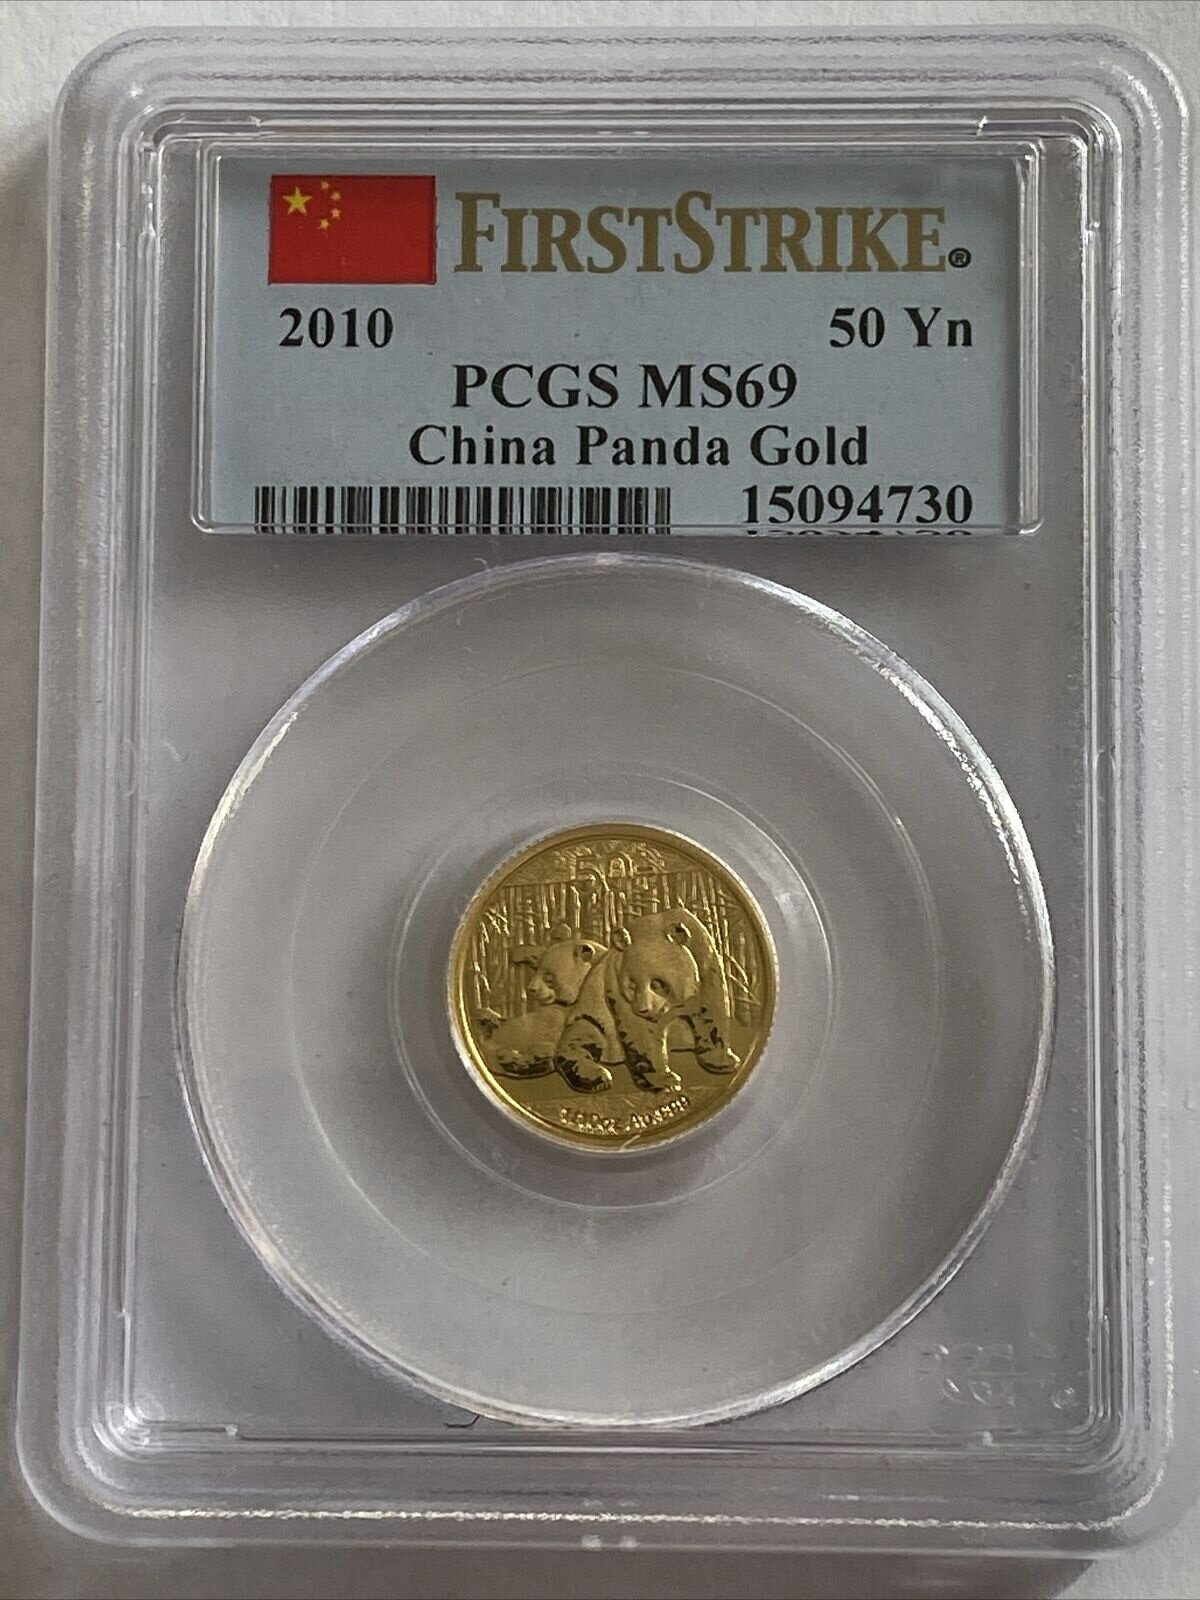 【極美品/品質保証書付】 アンティークコイン コイン 金貨 銀貨 [送料無料] 1/10 OZ .9999 Pure Fine Gold Chinese Panda 2010 First Strike MS 69 PCGS